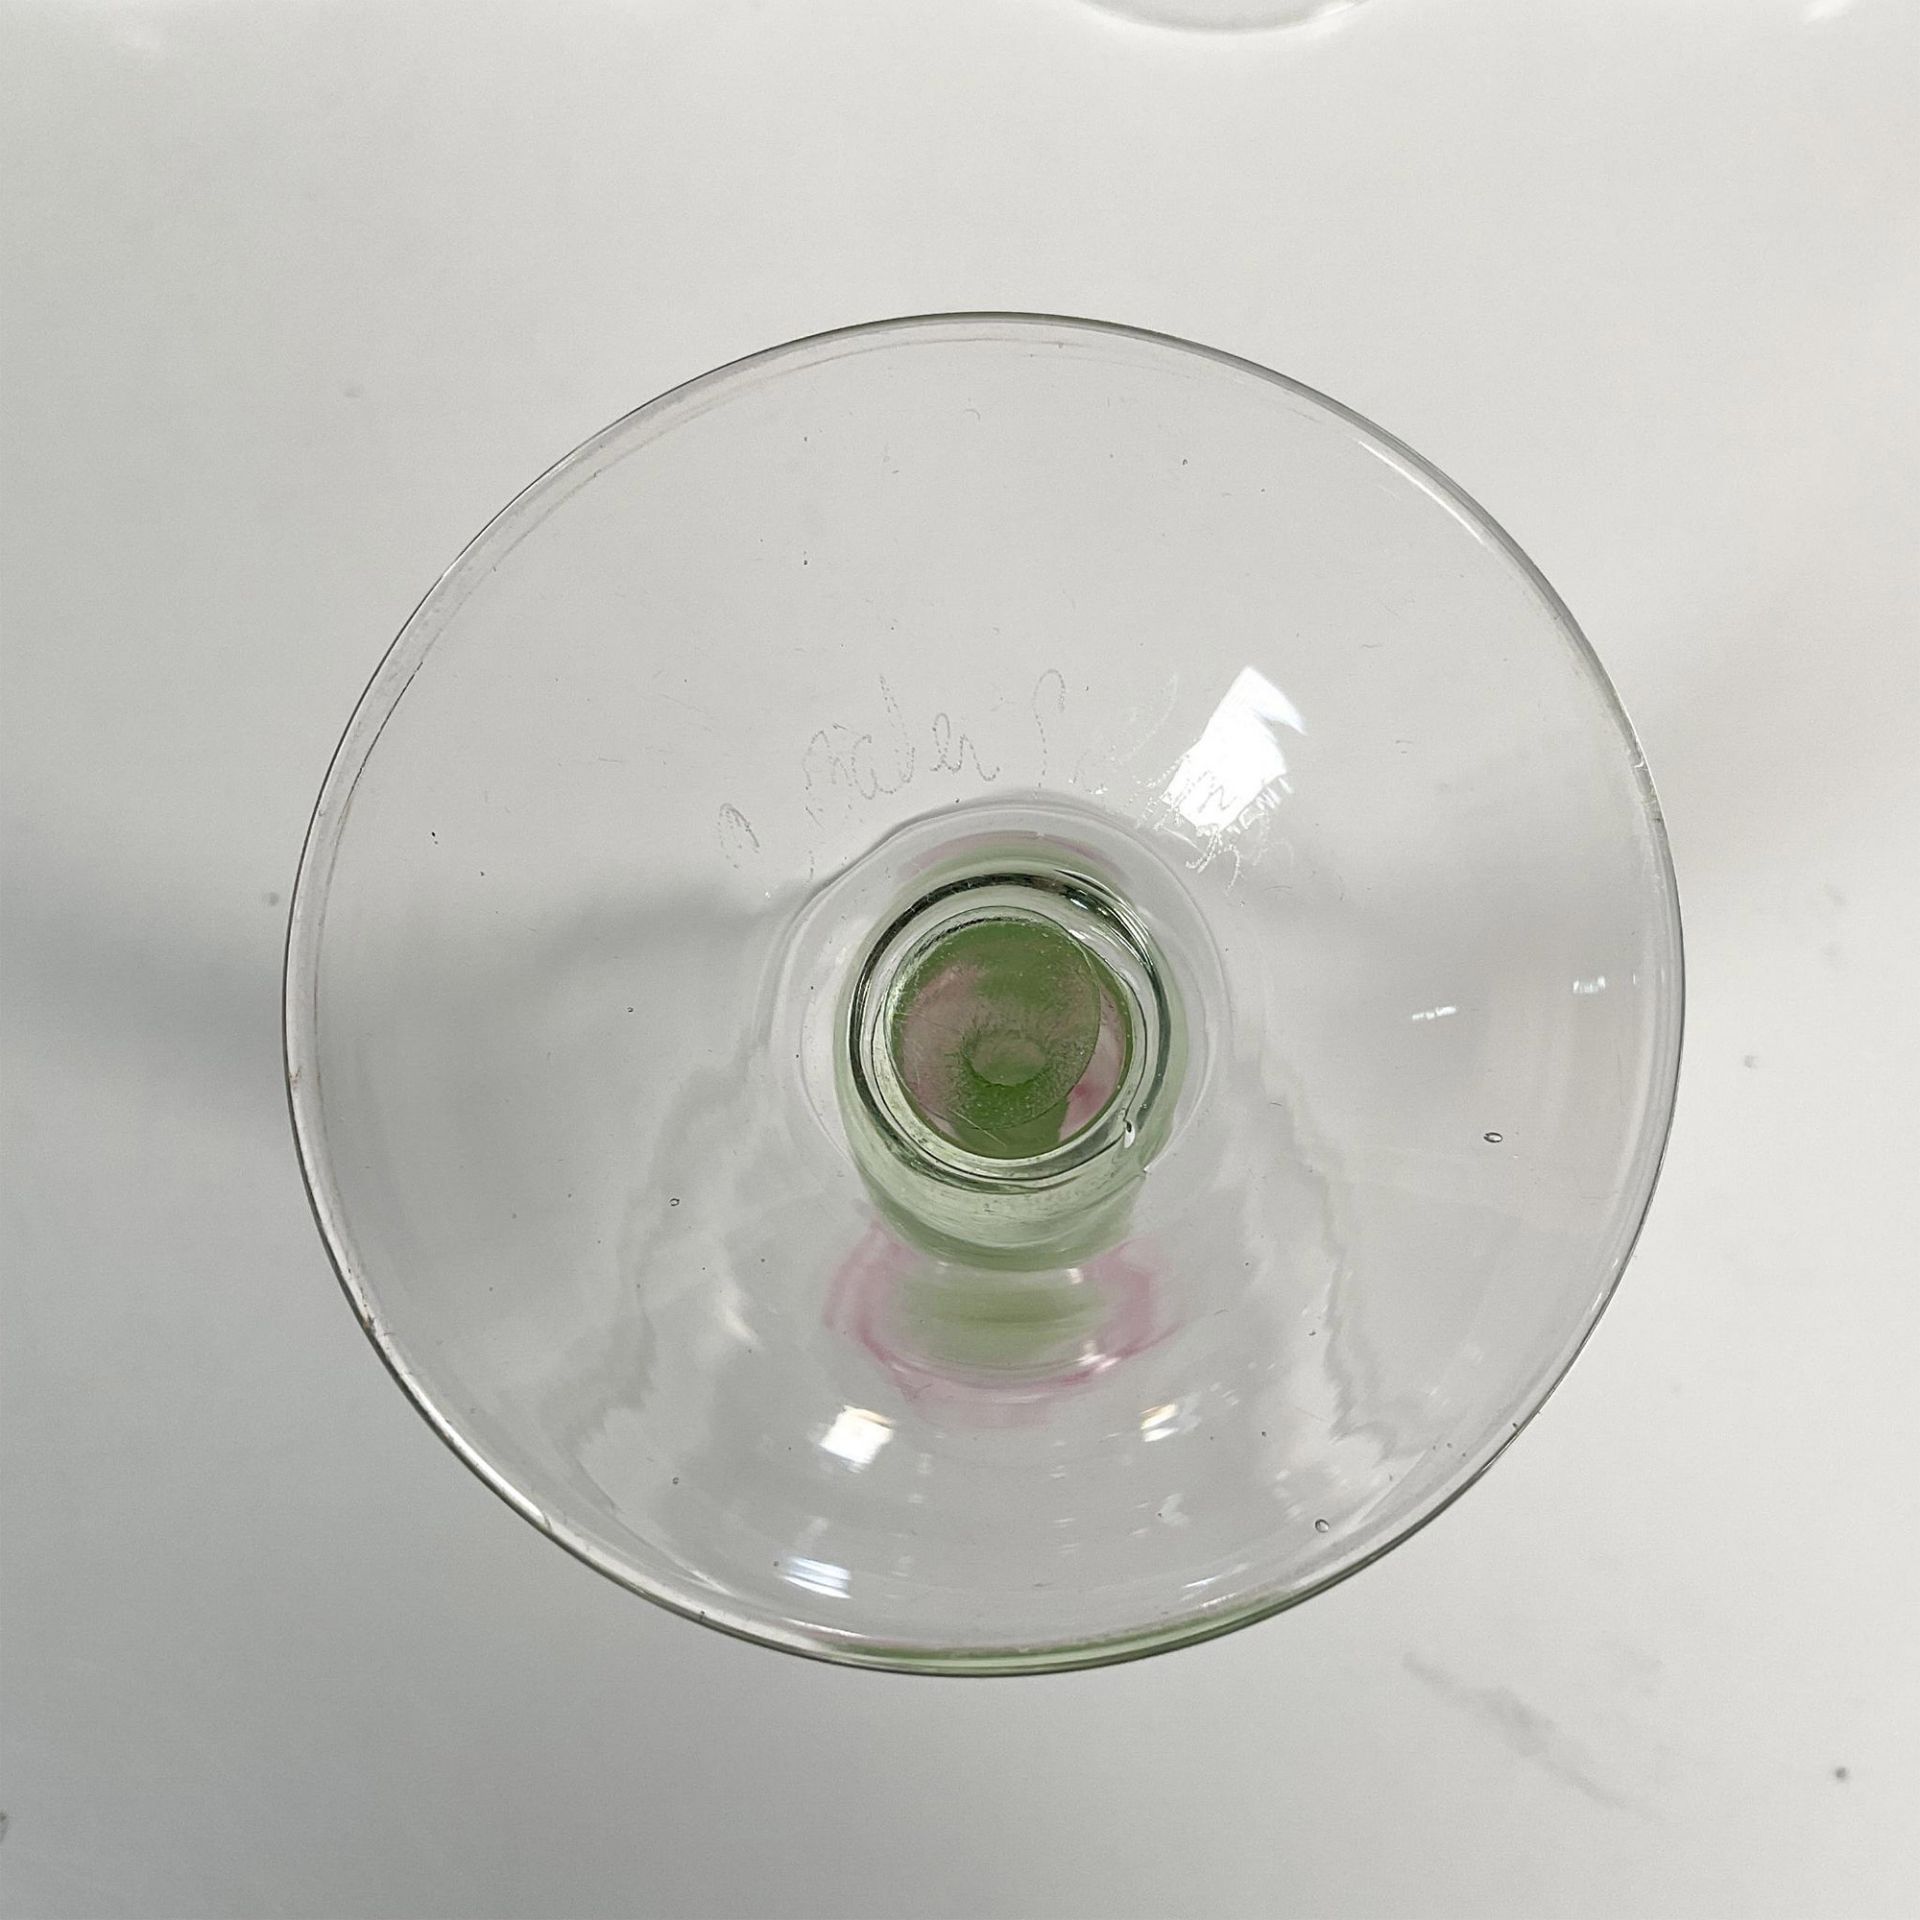 12pc Chris Baker Salmon Wine Glasses, Pink Flower Stem - Image 6 of 6